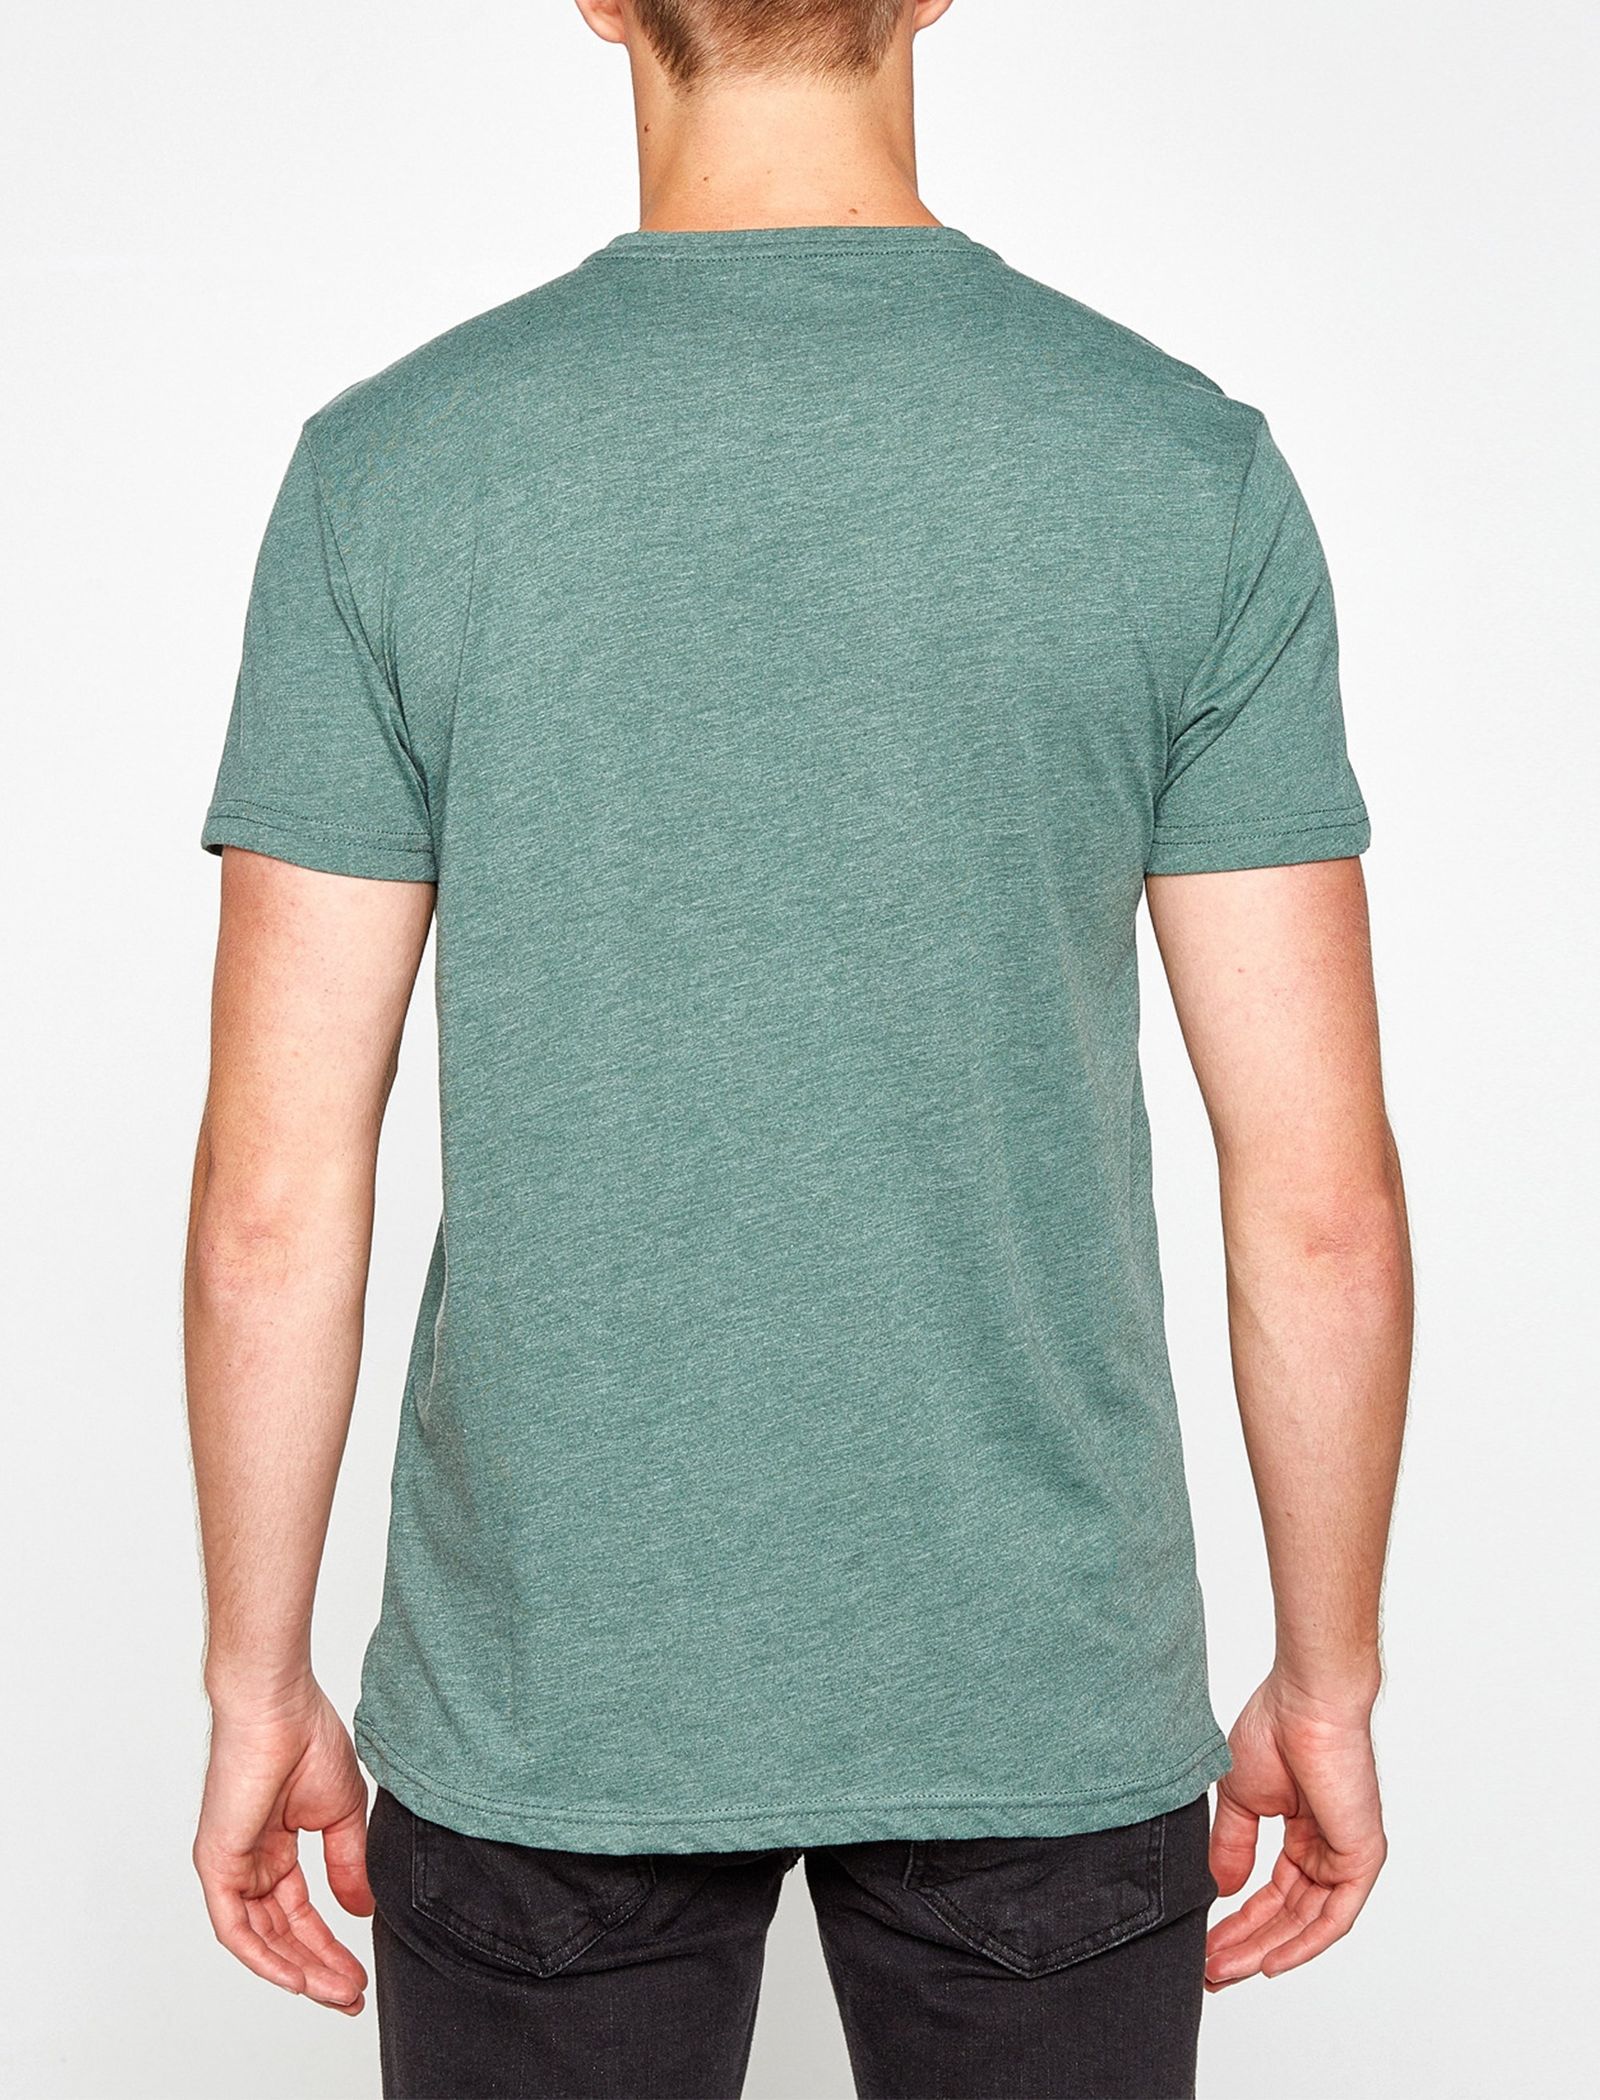 تی شرت یقه گرد مردانه - کوتون - سبز آبي - 3